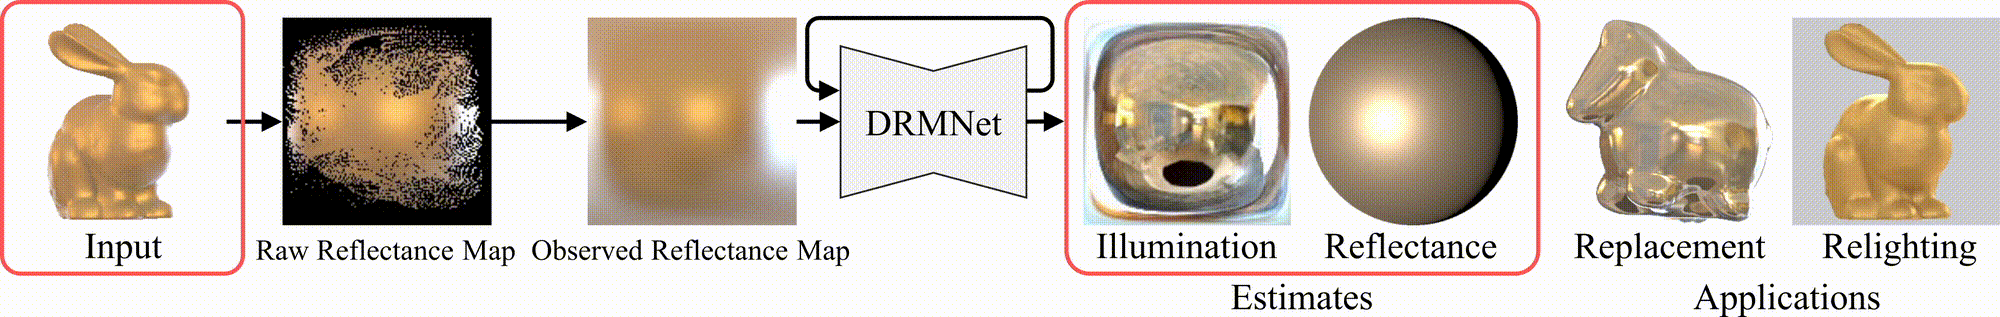 DRMNet header image